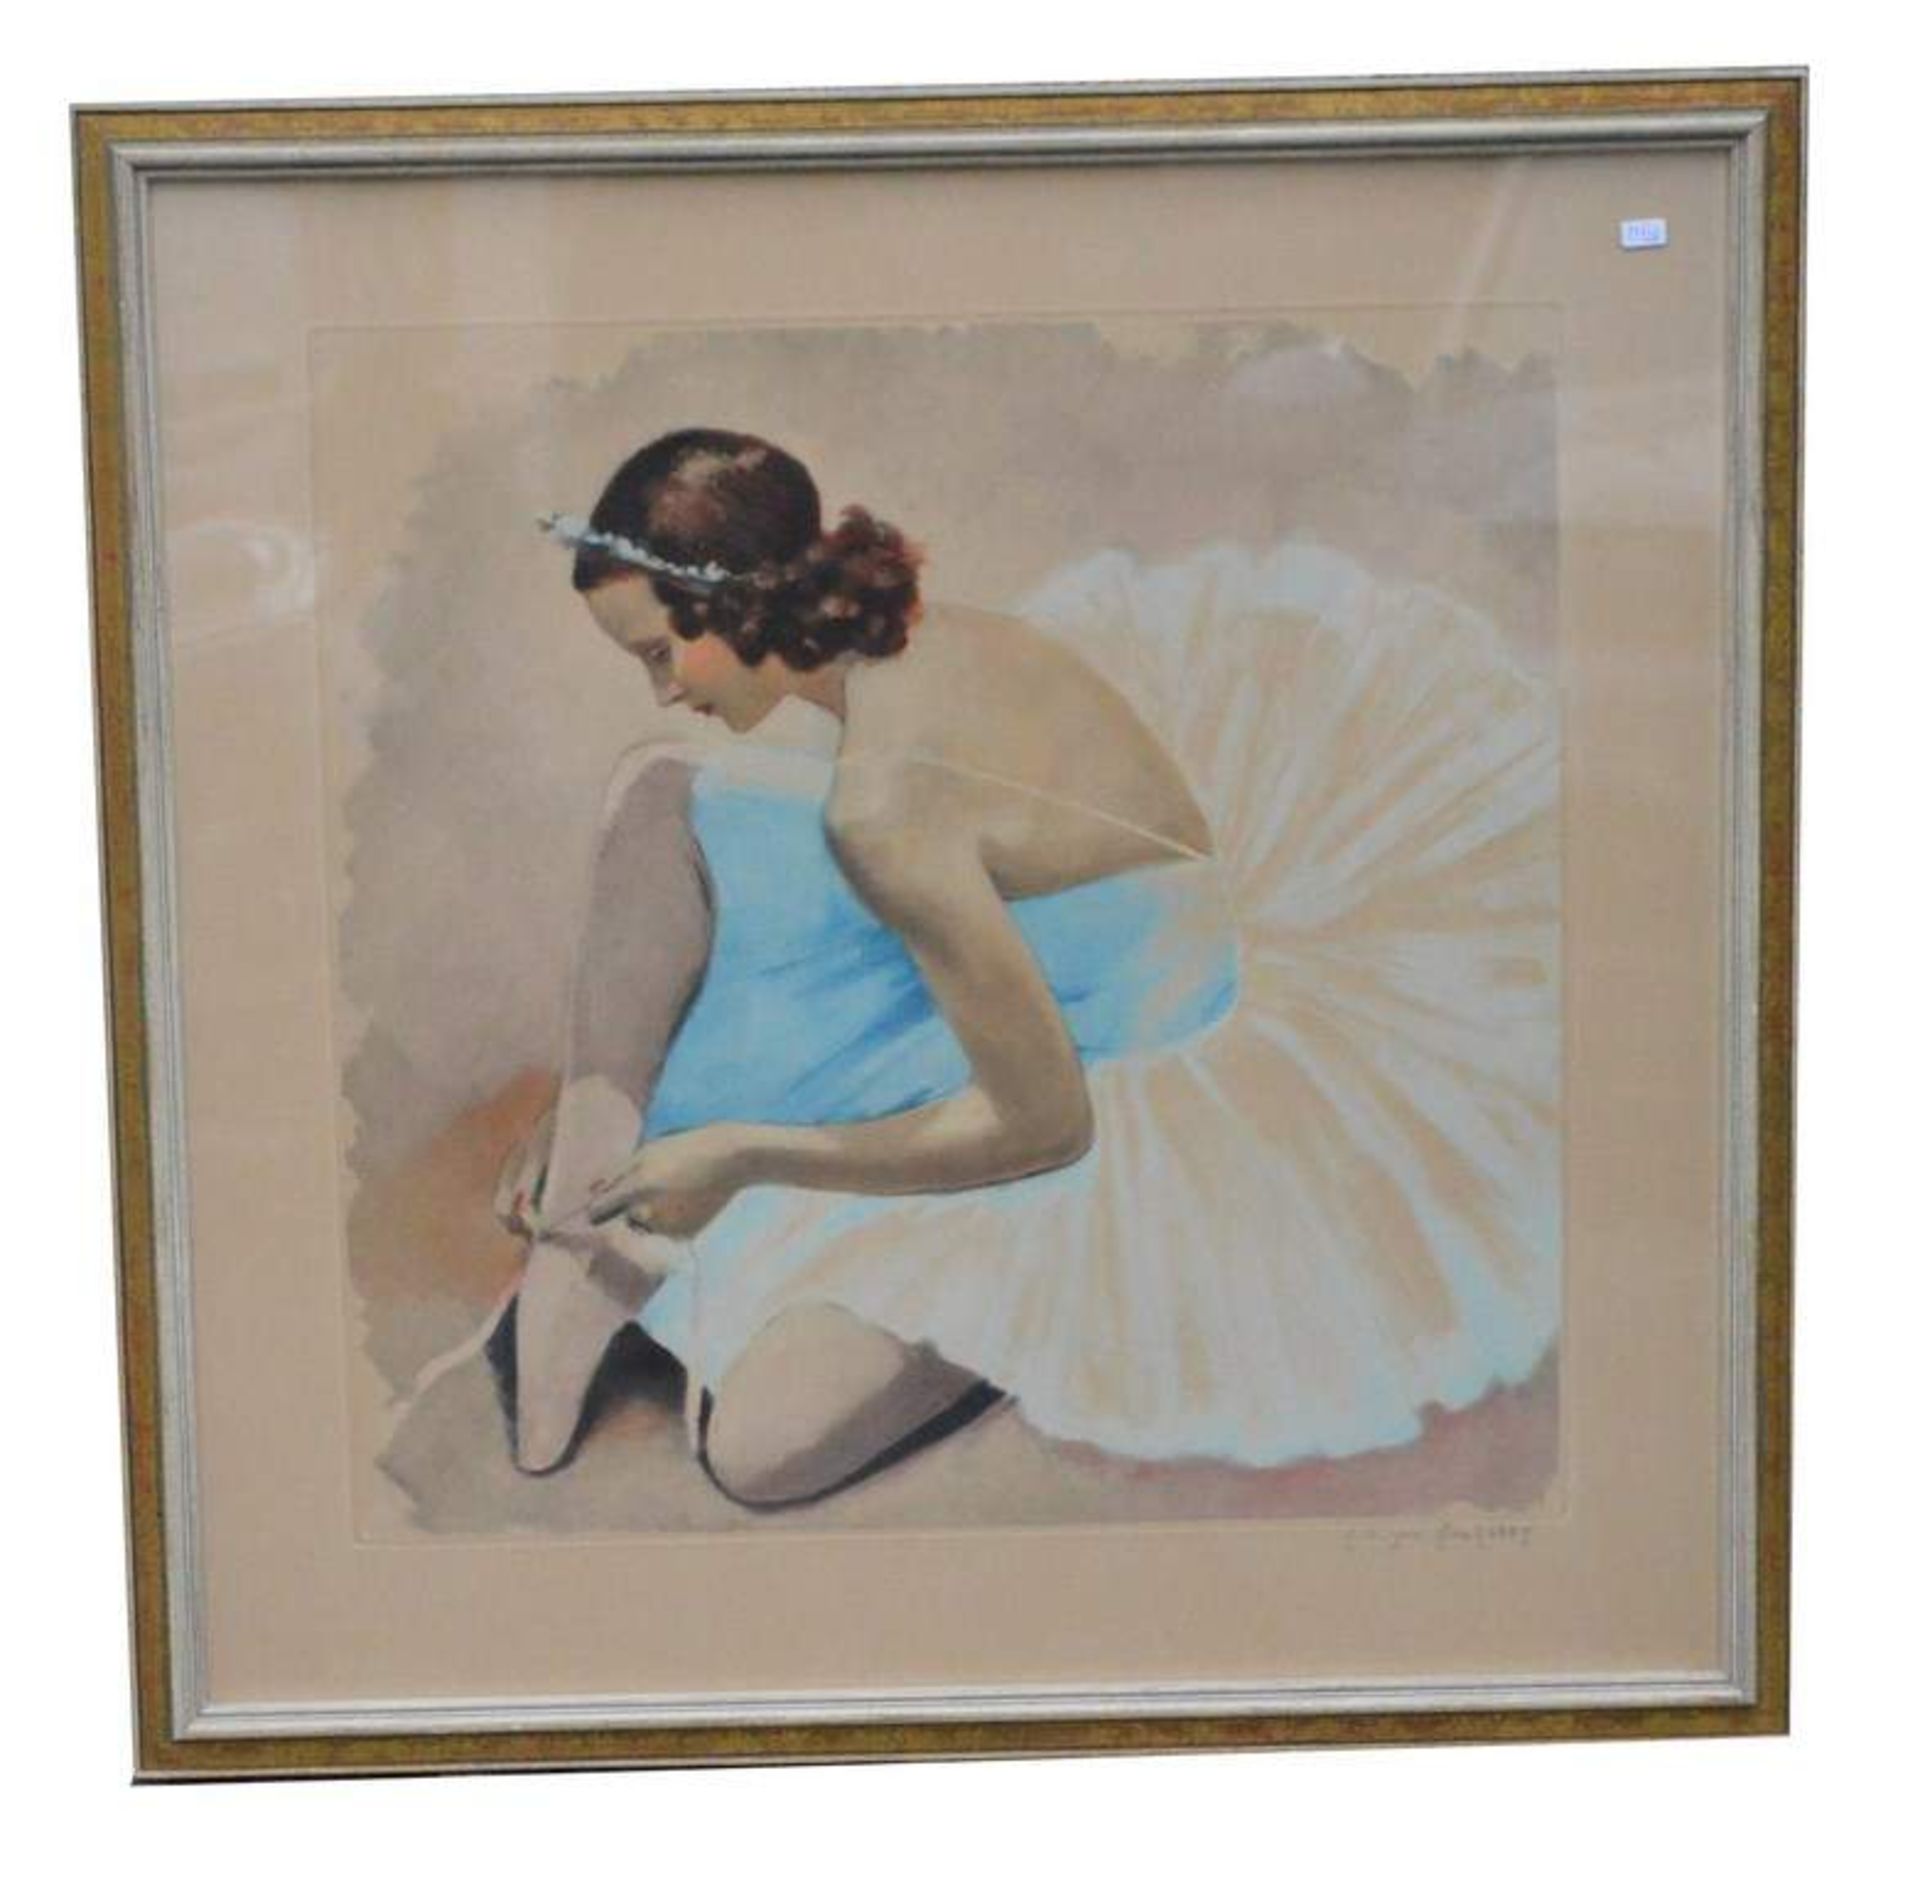 Mischtechnik Sitzende Tänzerin beim Schnüren der Ballettschuhe, sign. Jean Dominic van Caulaert (